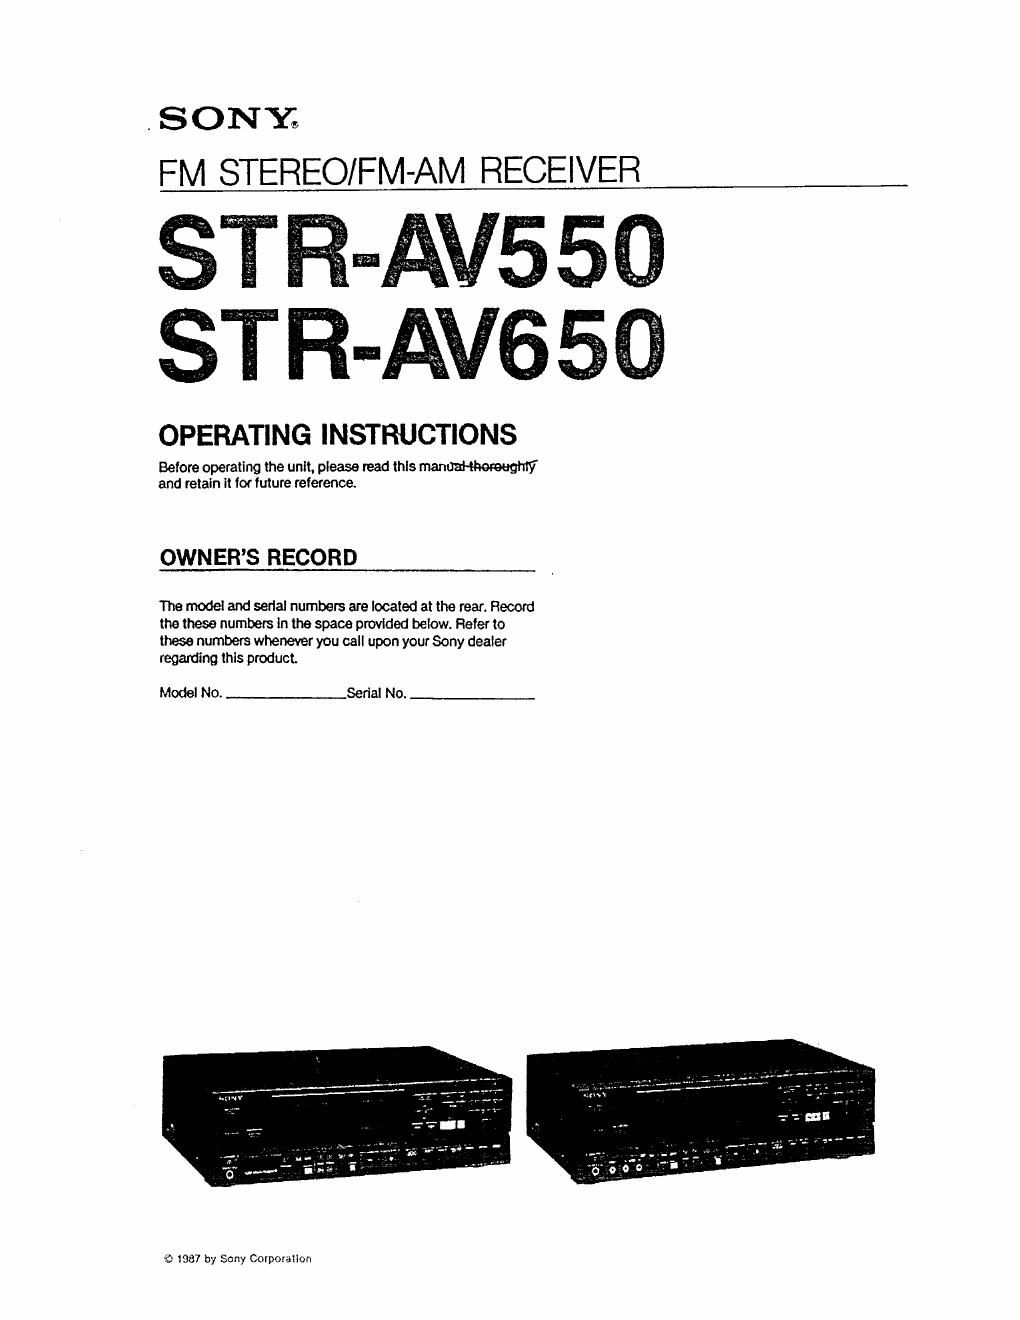 Sony STR AV 550 Owners Manual